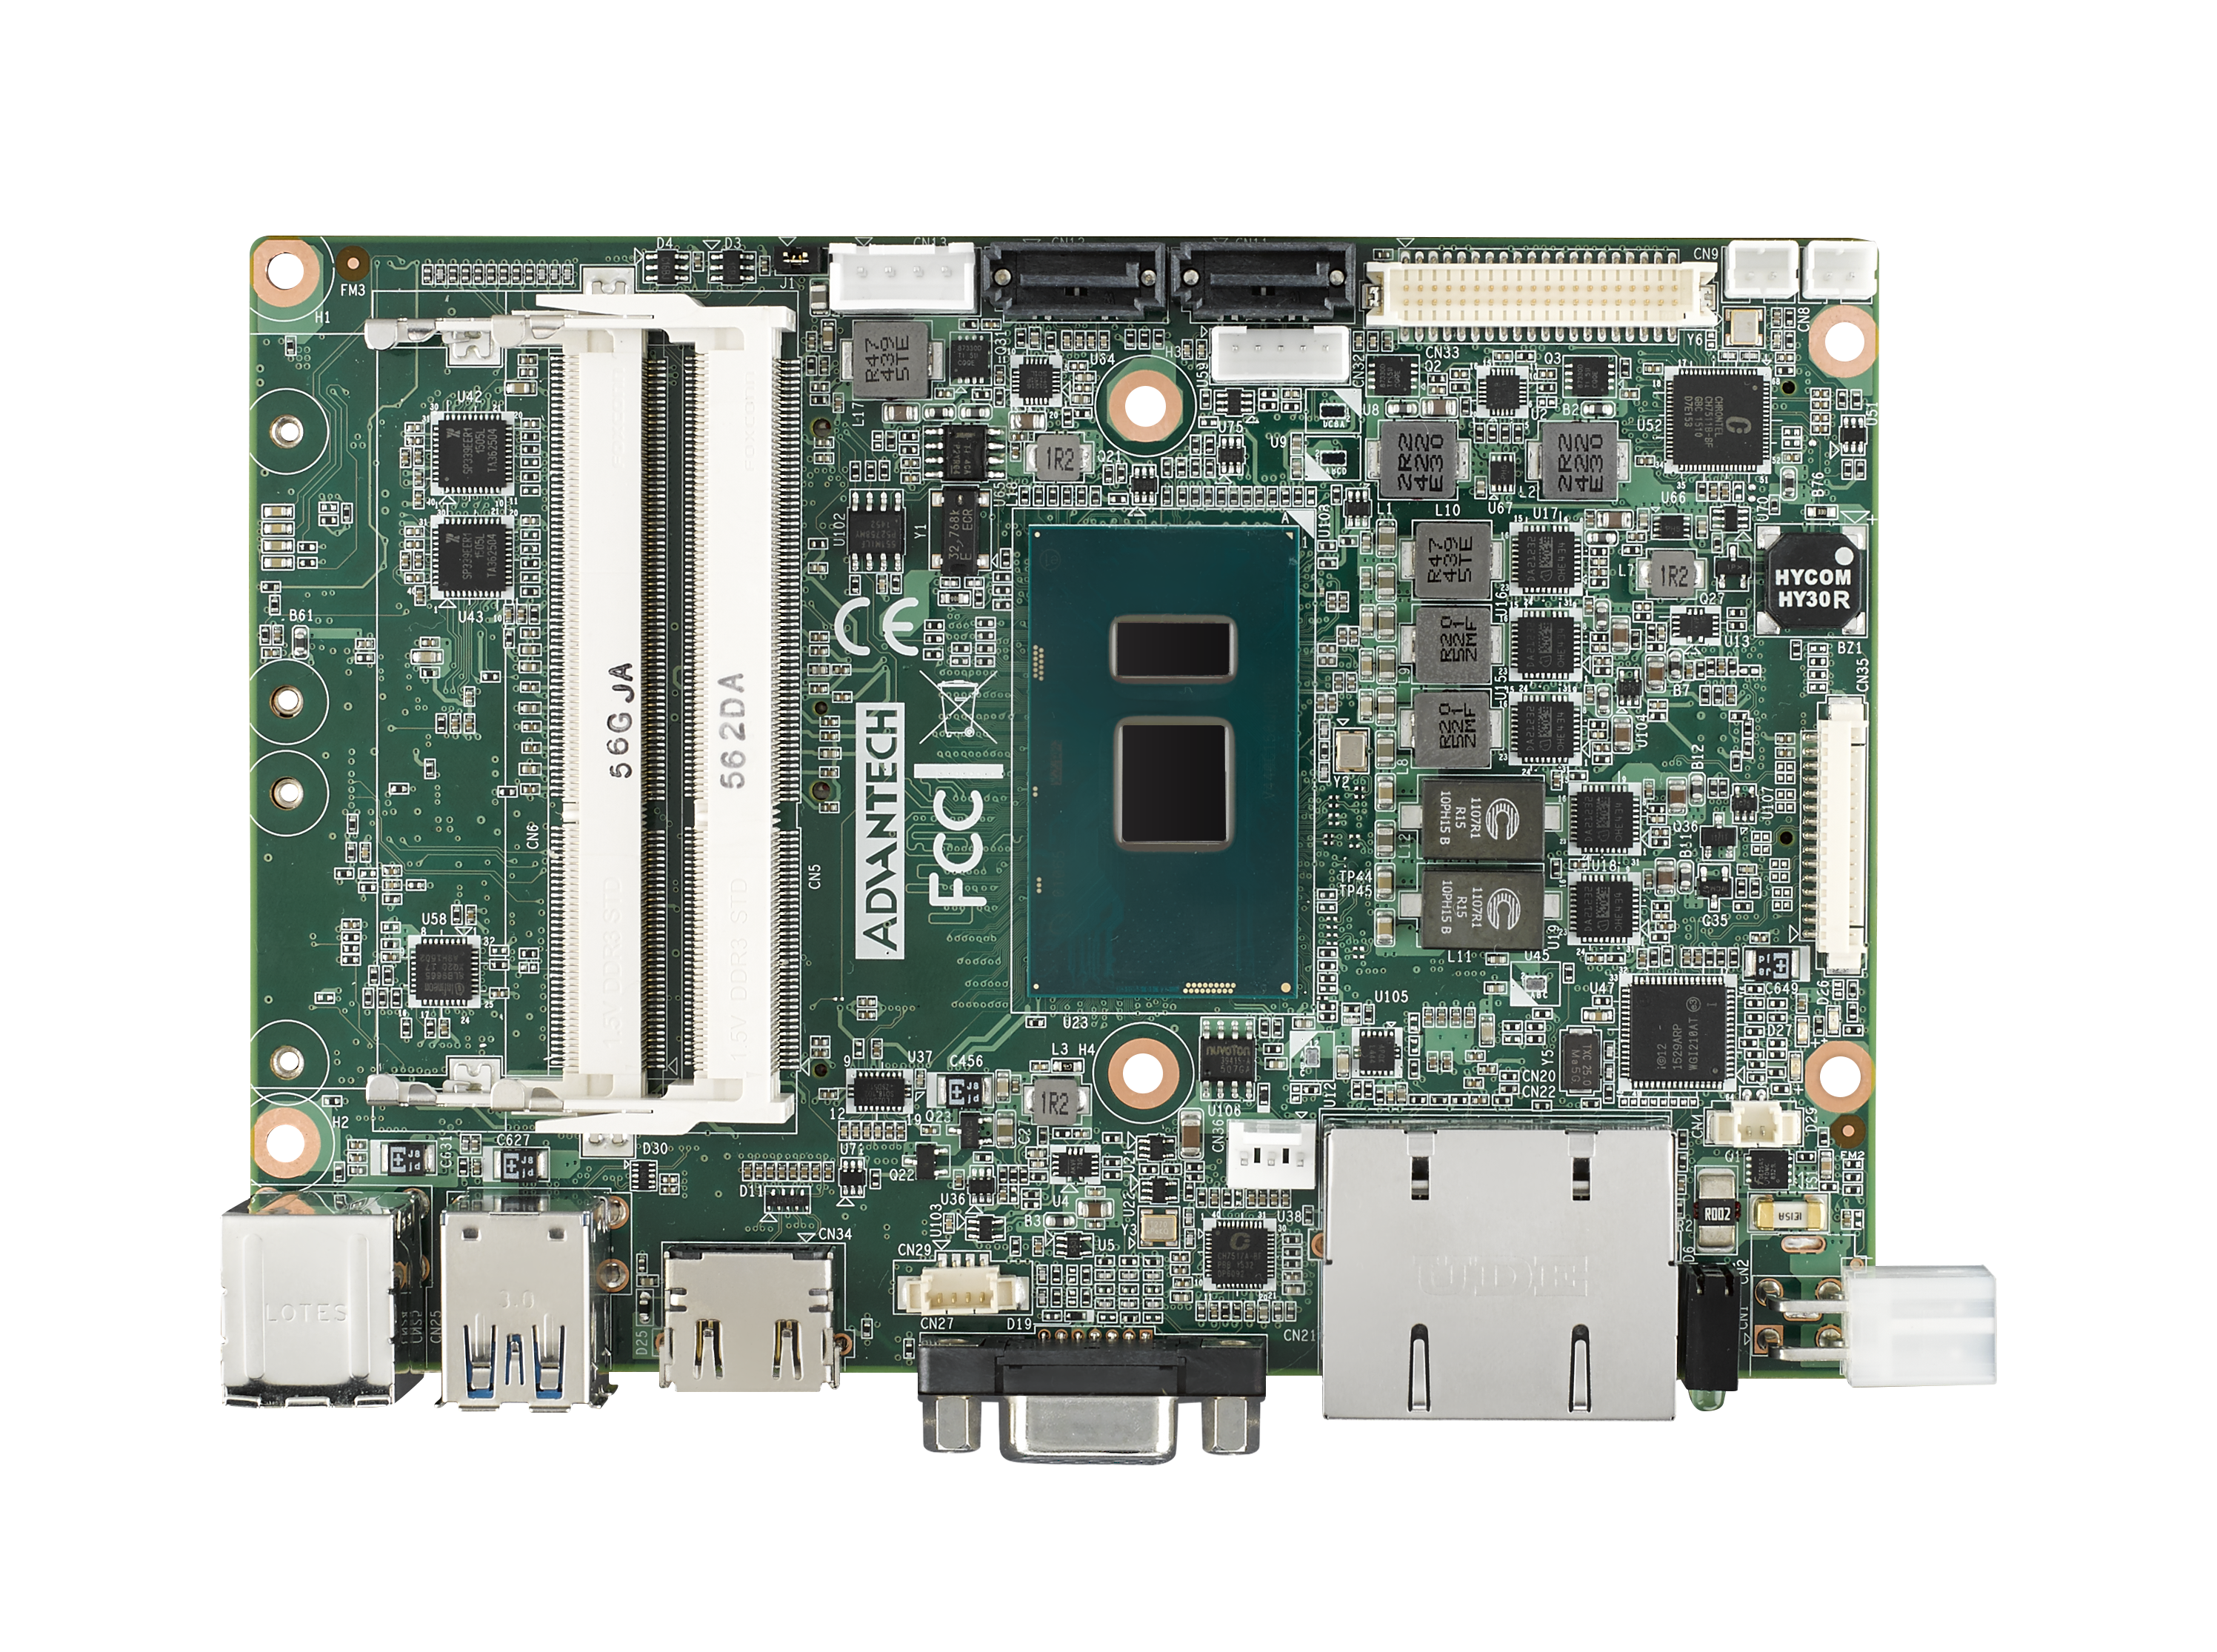 6th Gen i3 6100U 3.5” Compact SBC with DDR3L, VGA, HDMI, 48-bit LVDS, 2 GbE, 
2 Mini PCIe, mSATA, Fanless, MIOe